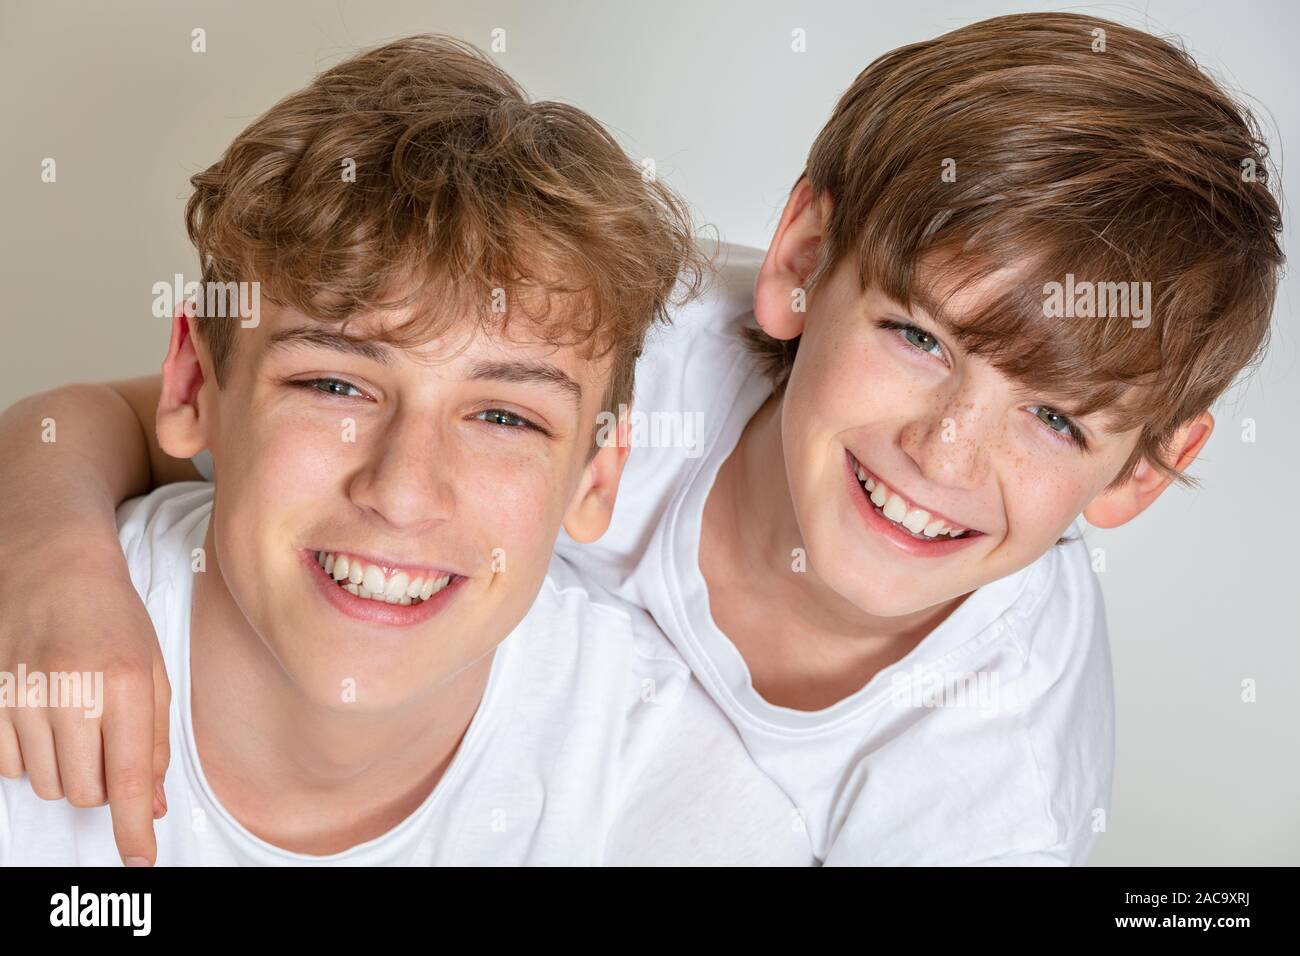 Fond blanc photographie de jeune garçon heureux frères enfants vêtus de t-shirts et souriant avec dents parfaite Banque D'Images